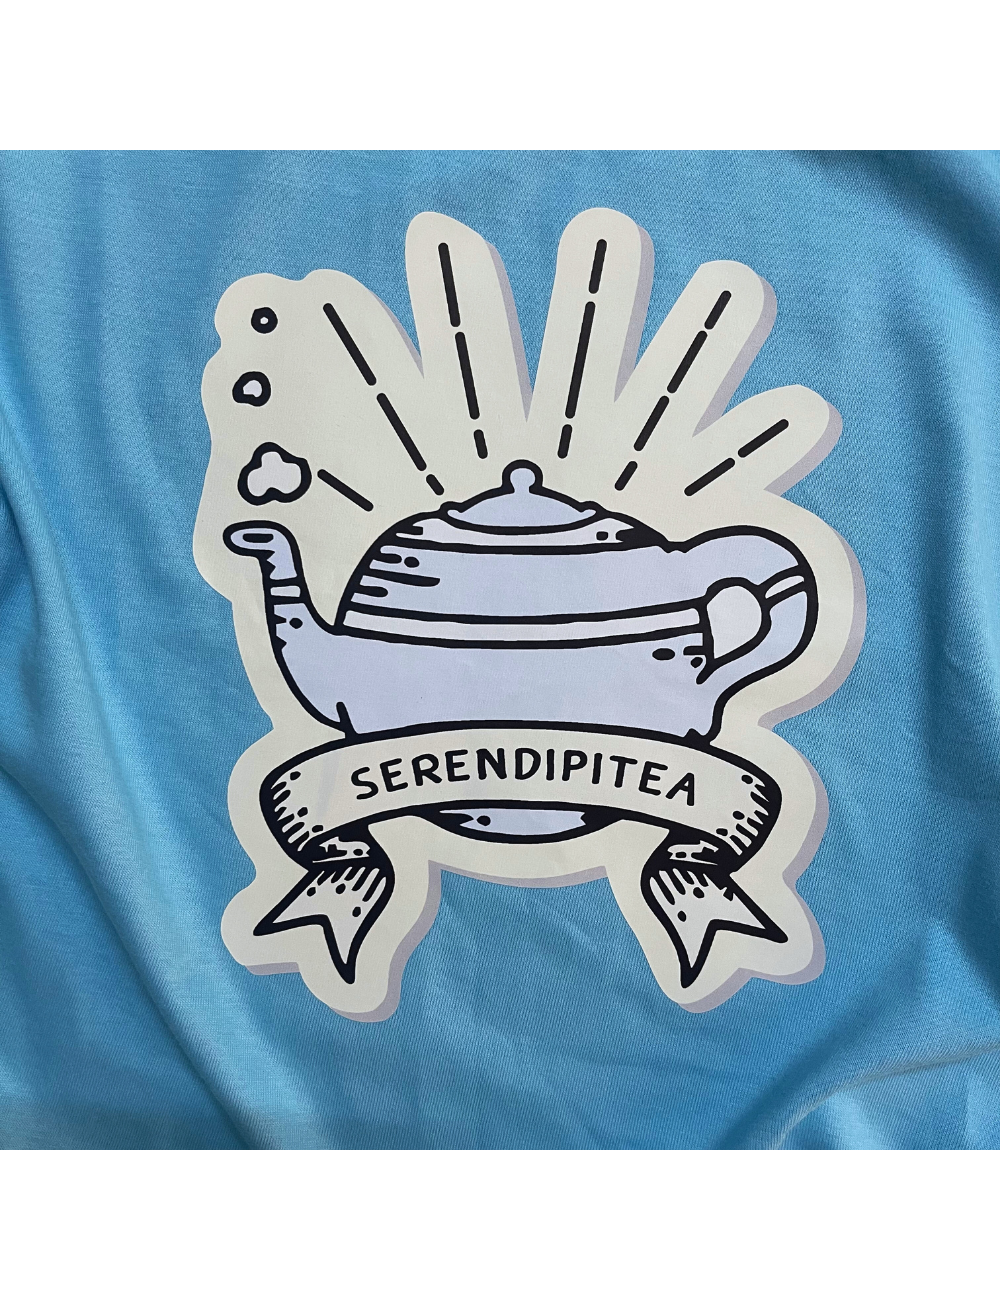 Serendipitea - Sky Blue - Regular Fit 100% Cotton T-Shirt